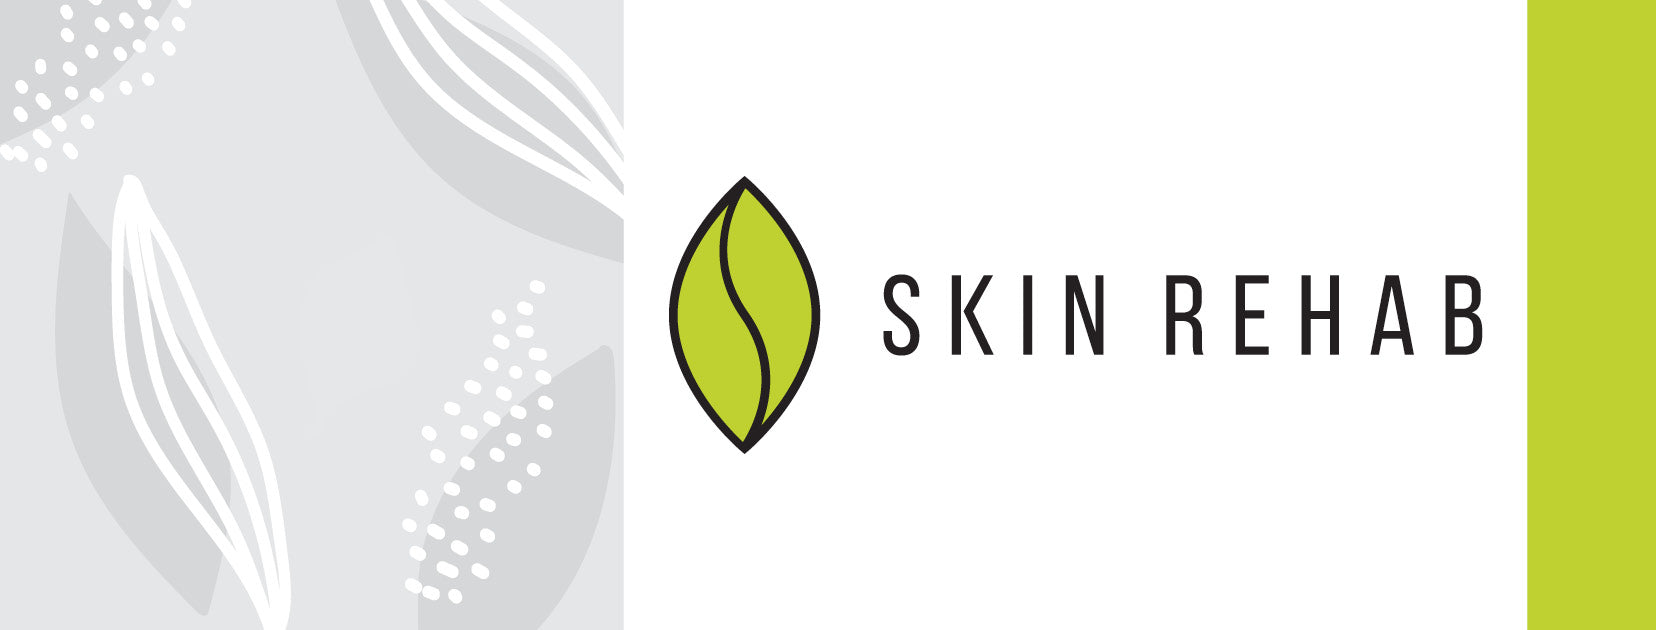 Skin Rehab - Building & Strengthening